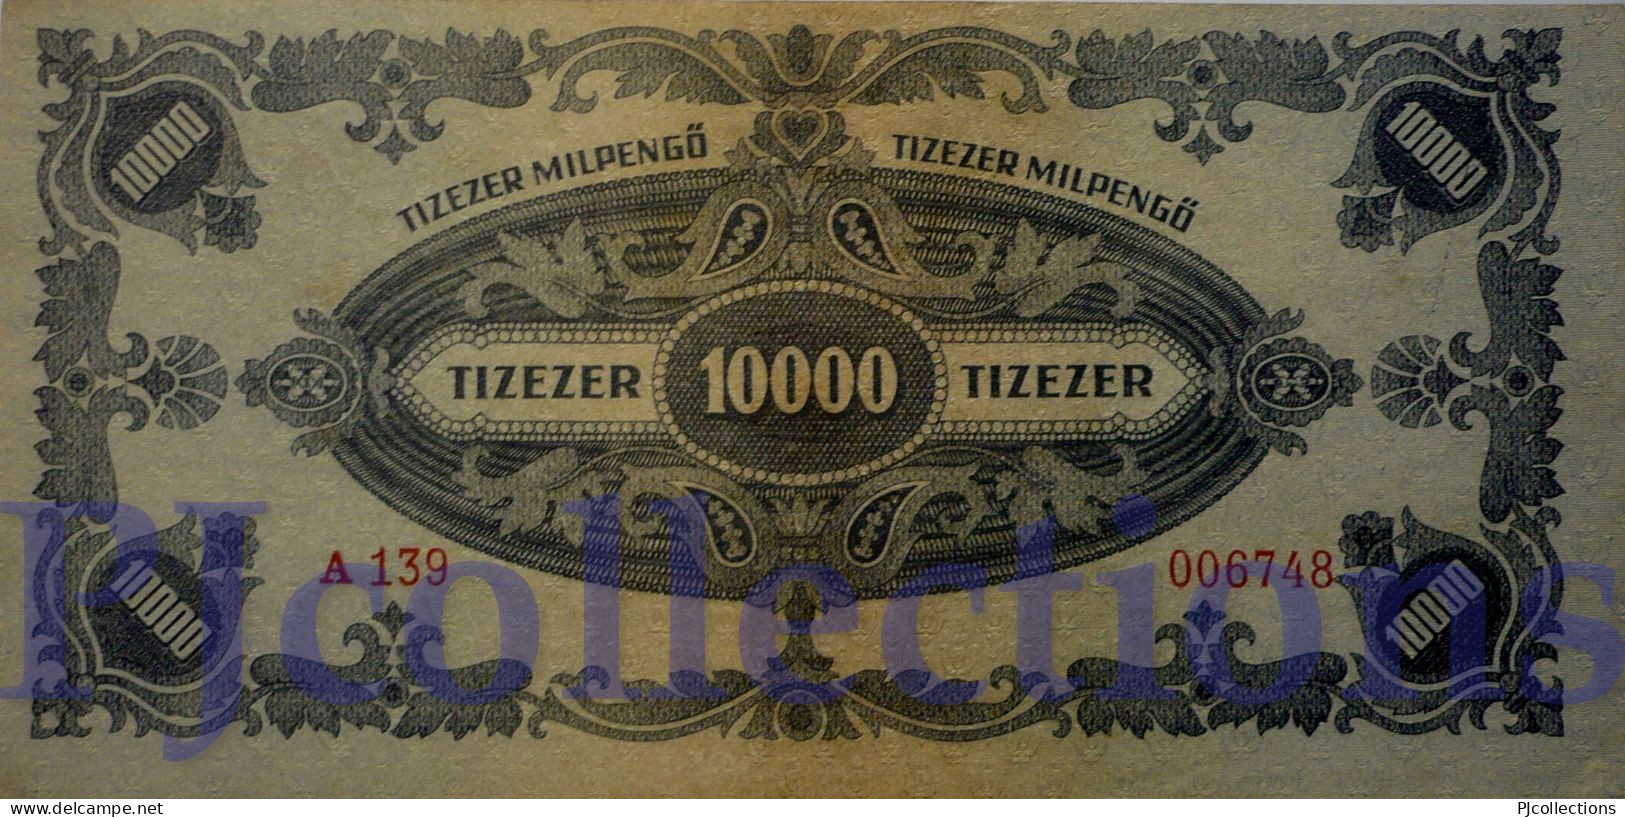 HUNGARY 10000 MILPENGO 1946 PICK 126 AU/UNC LOW SERIAL NUMBER "006748" - Hongarije